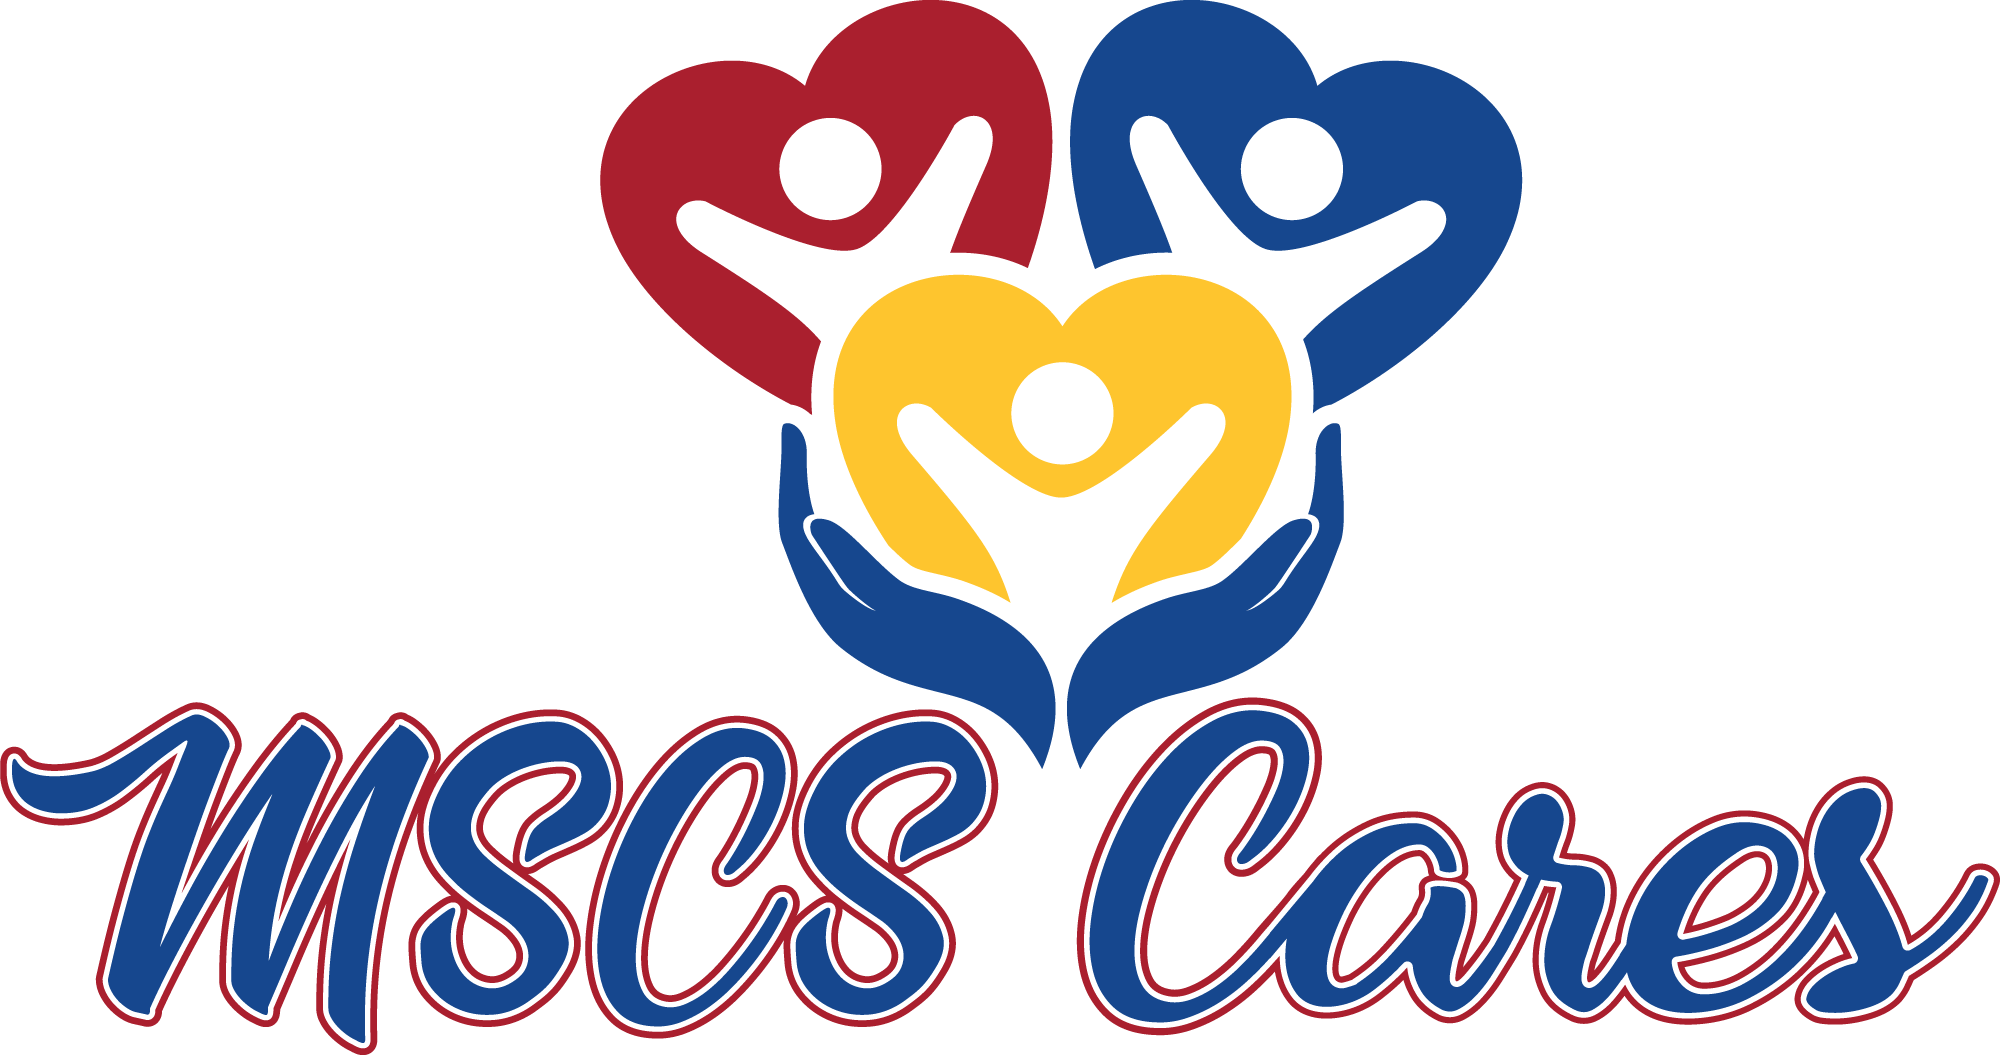 MSCS Cares